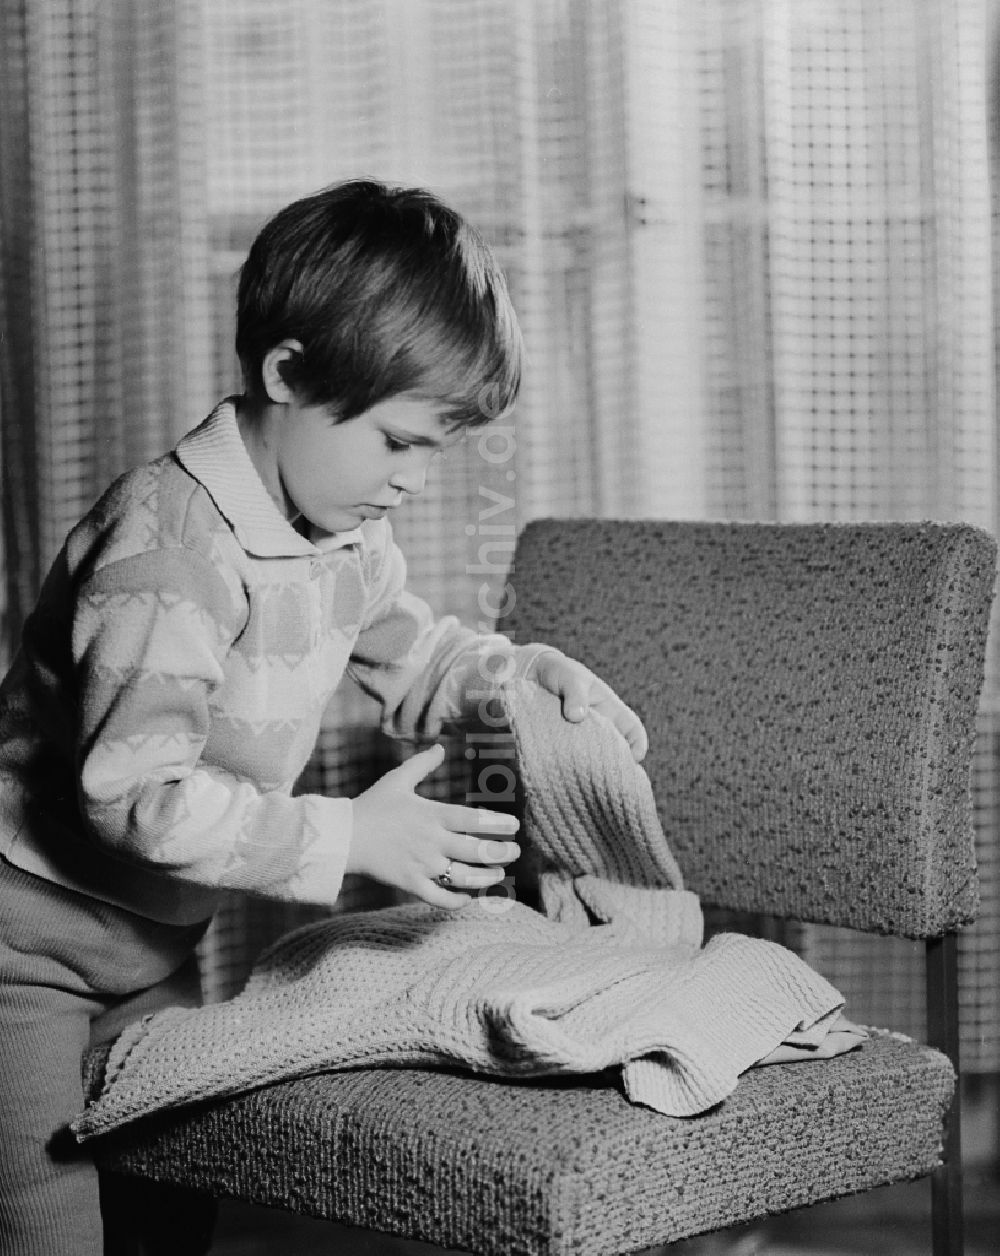 DDR-Fotoarchiv: Berlin - Kleines Kind beim zusammenlegen eines Pullovers in Berlin